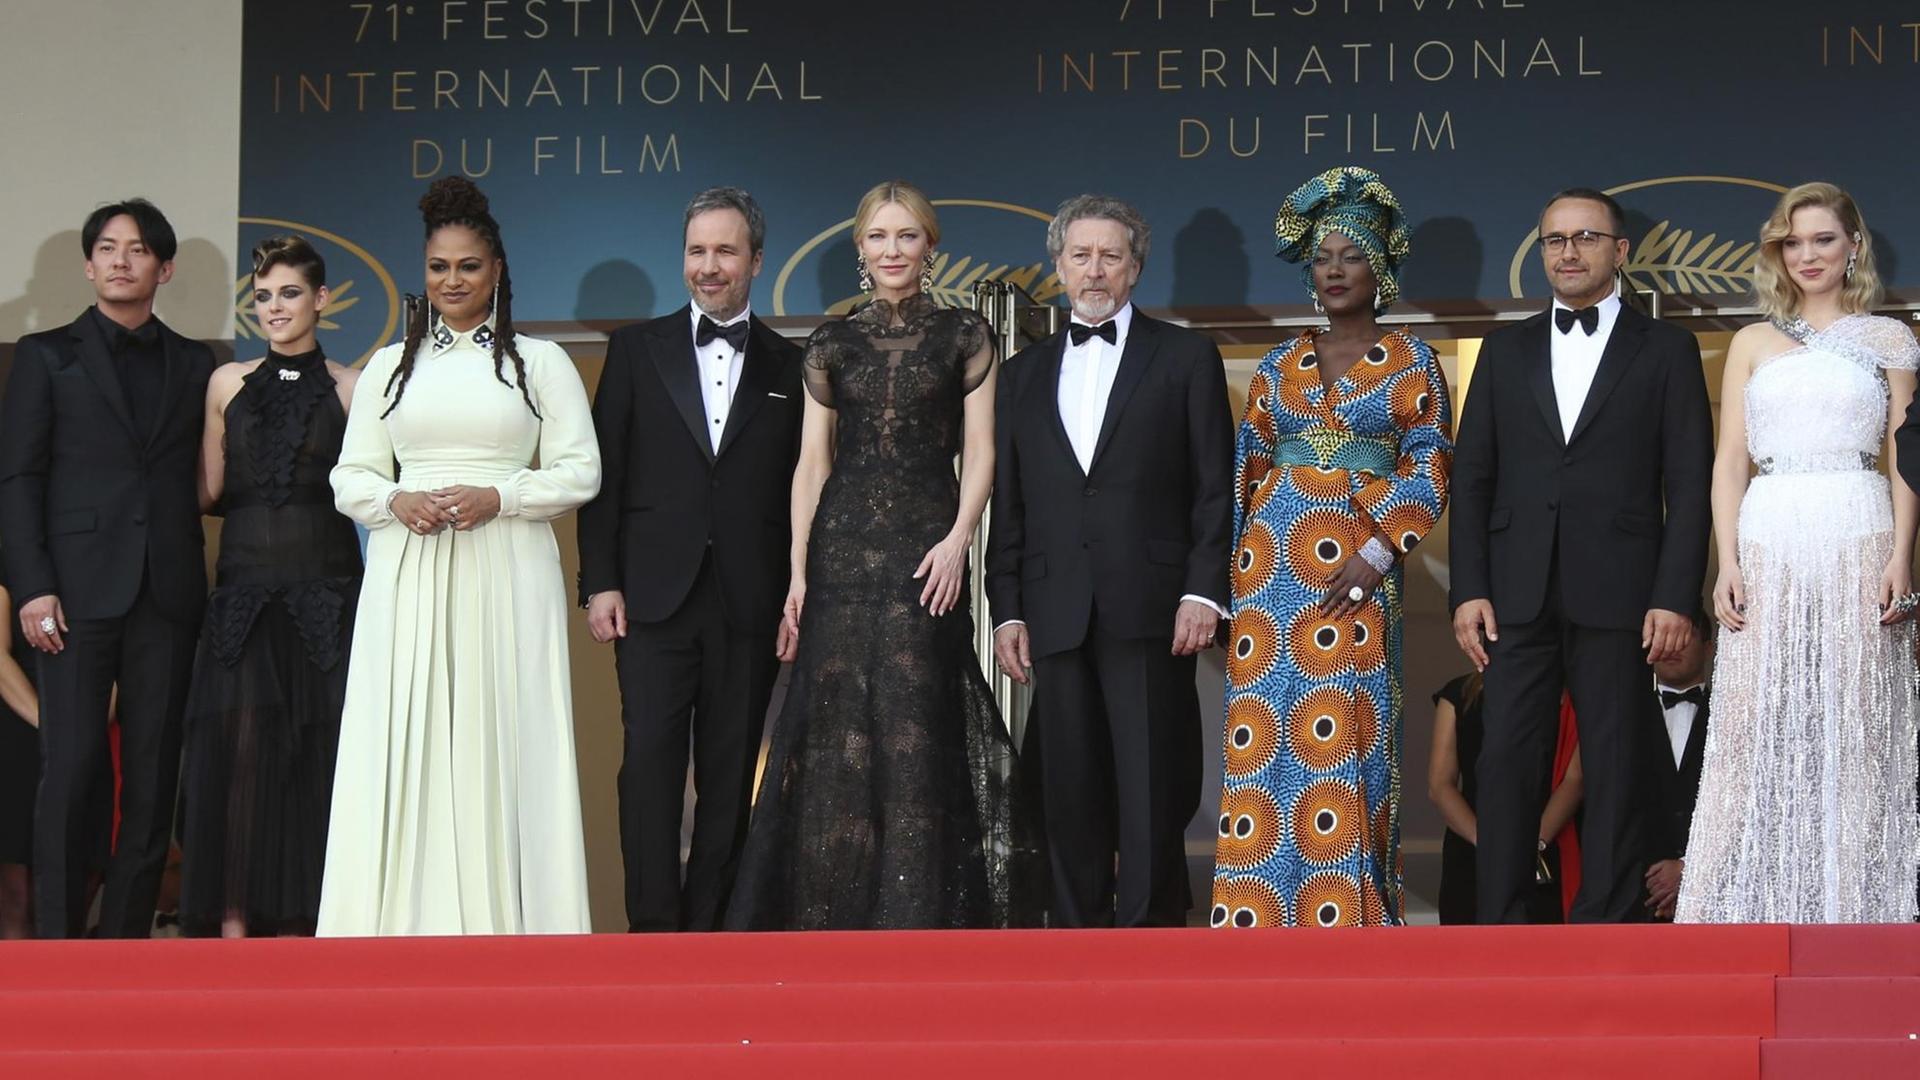 Das Bild zeigt die Jury-Mitglieder in Cannes: Chang Chen, Kristen Stewart, Ava DuVernay, Denis Villeneuve, Cate Blanchett, Robert Guediguian, Khadja Nin, Andrey Zvyagintsev und Lea Seydoux auf dem roten Teppich.